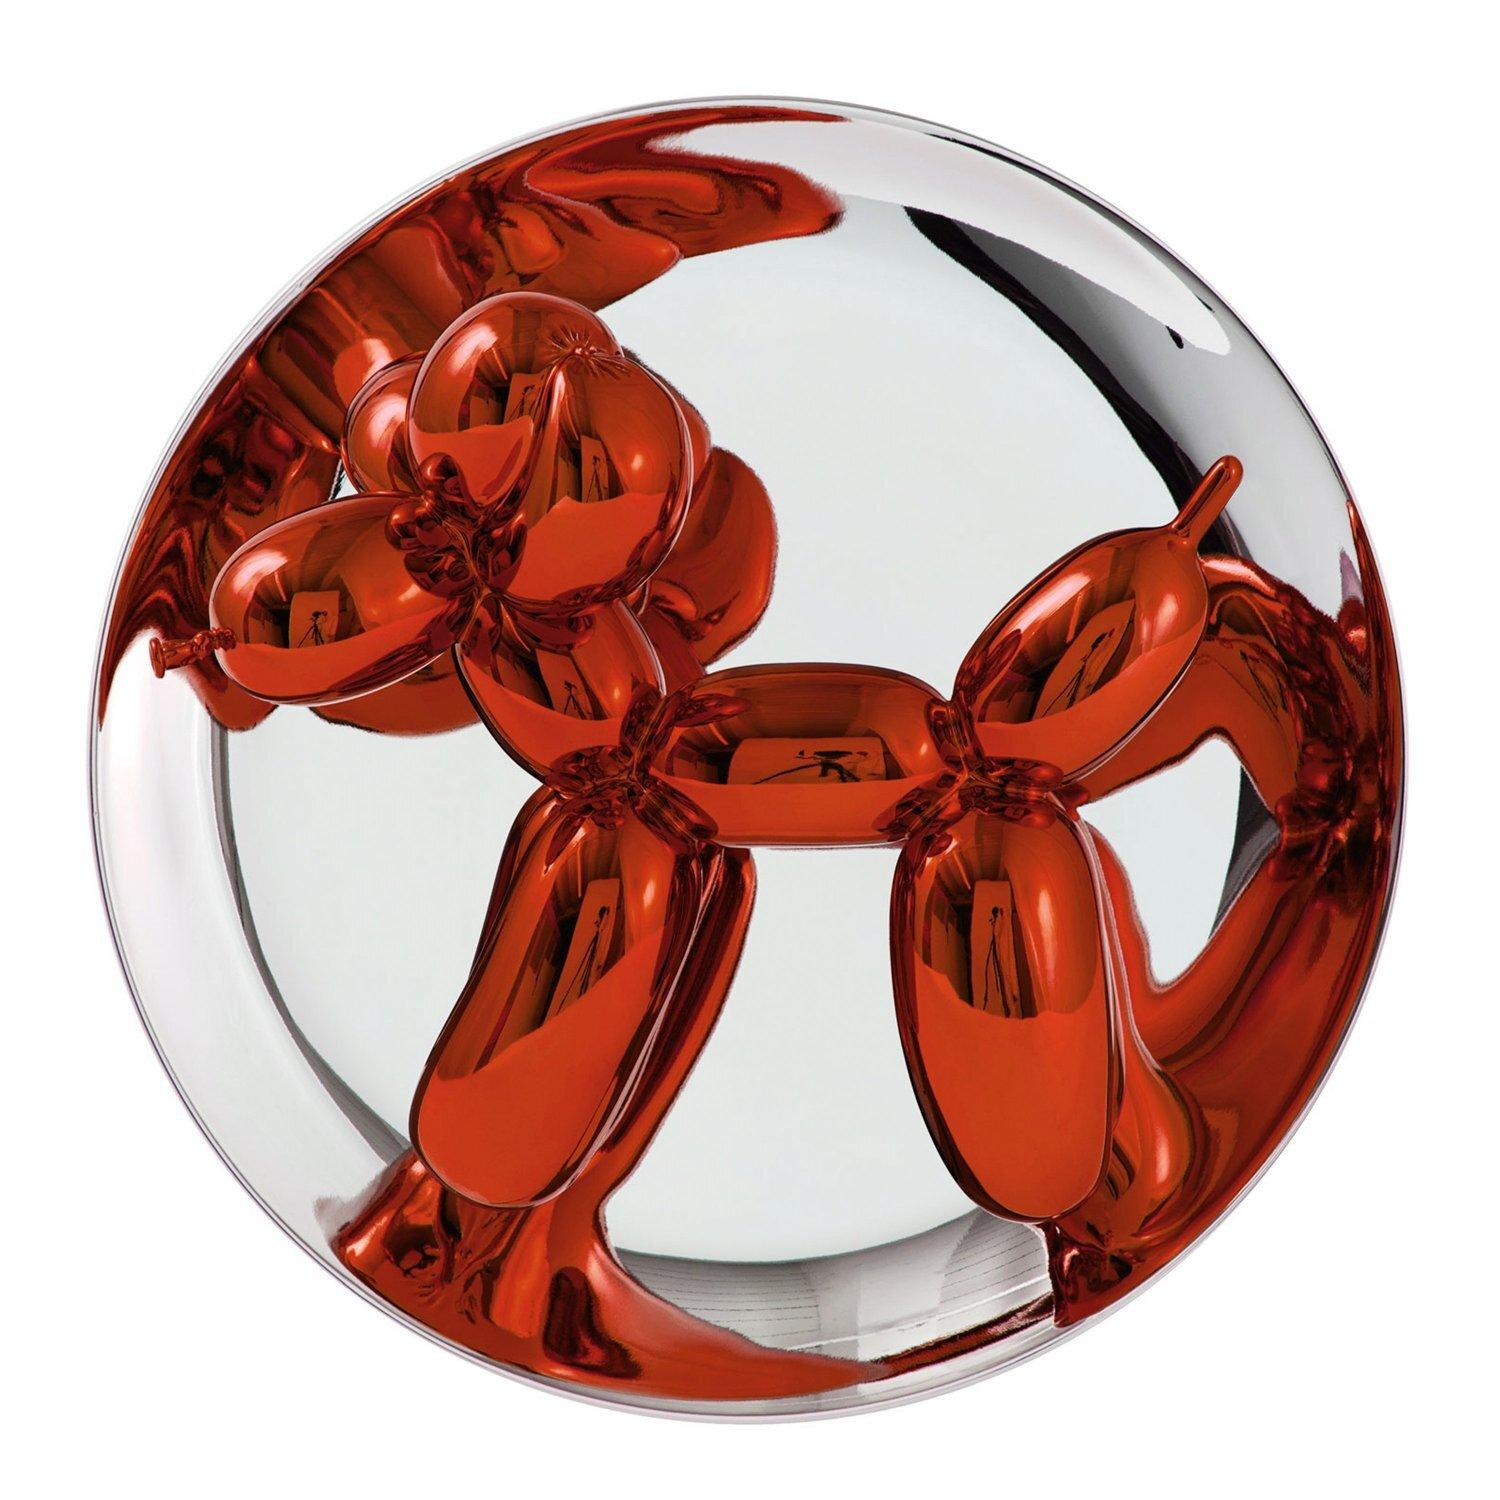 modern art balloon dog